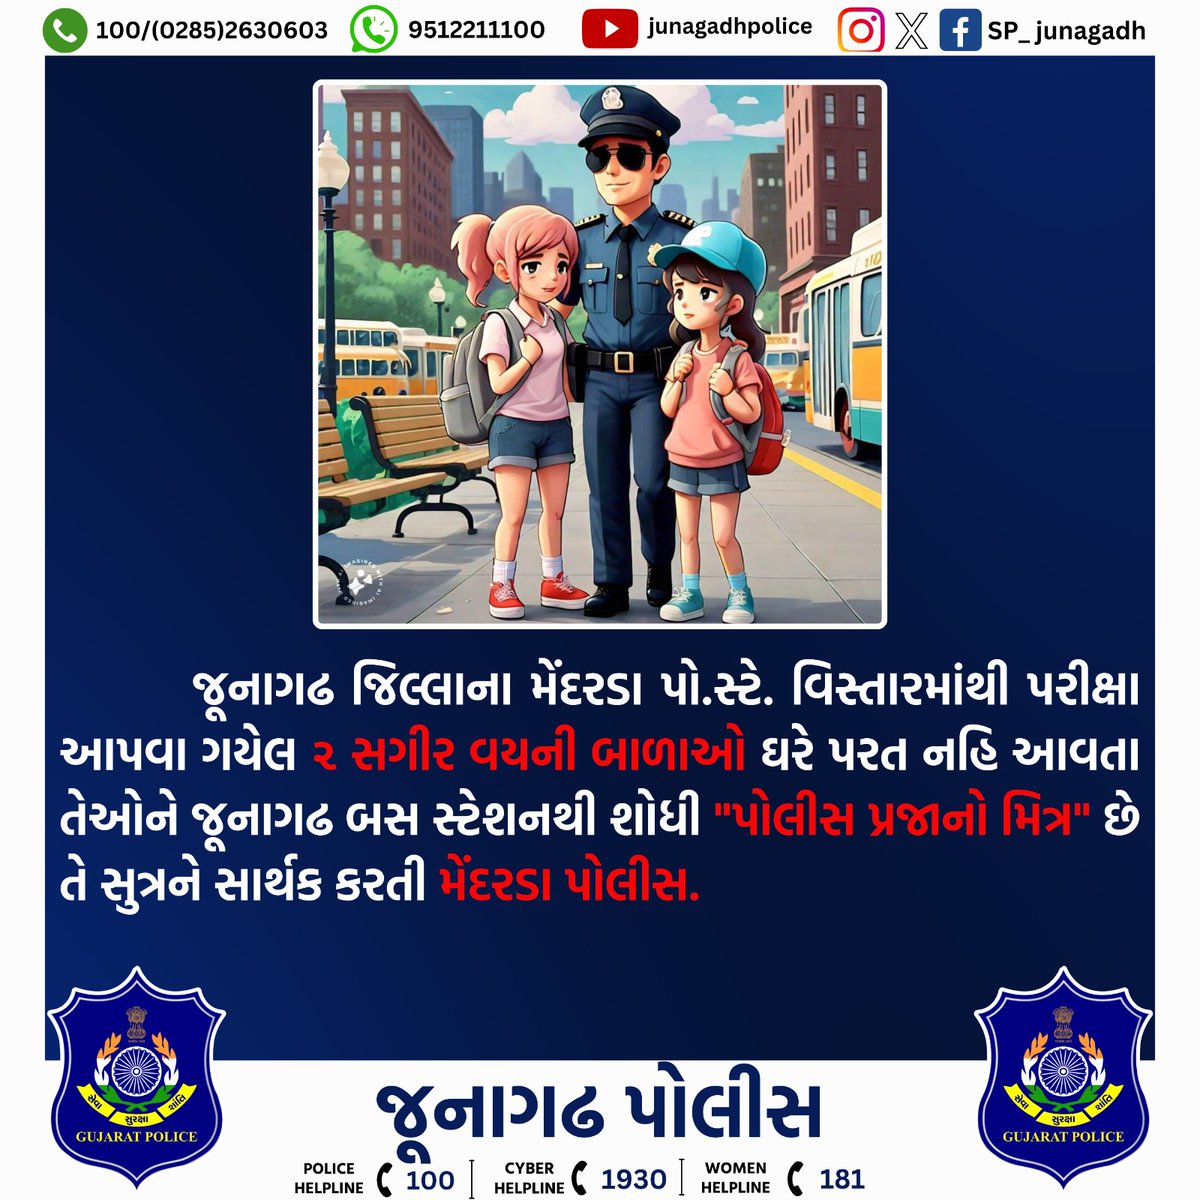 પરીક્ષા આપી ઘરે પરત નહિ આવેલ ૨ સગીર વયની બાળાઓને શોધી આપતી મેંદરડા પોલીસ. @dgpgujarat @GujaratPolice @IGP_JND_Range #gujaratpolice #junagadhpolice #Police